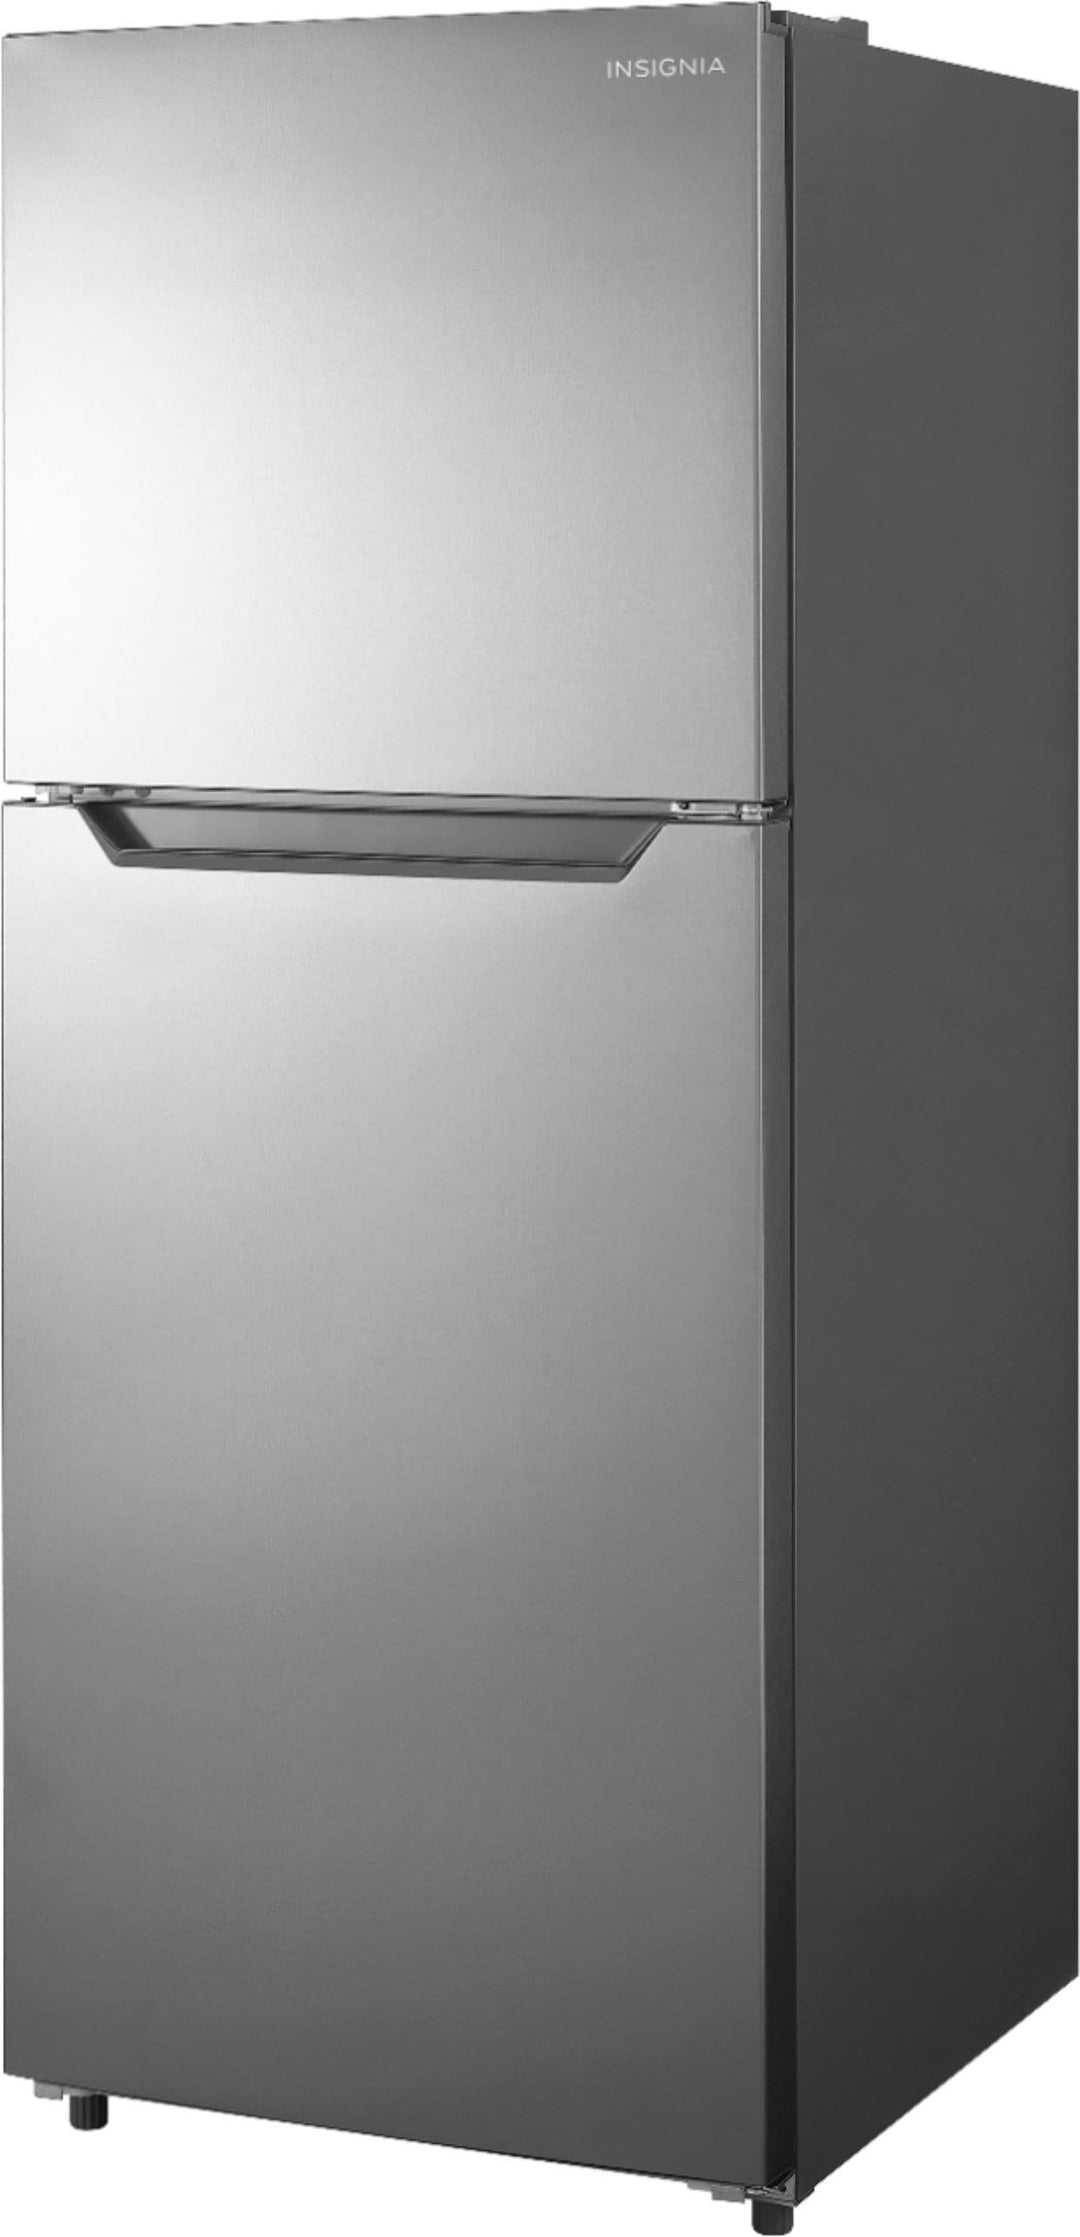 Insignia™ - 10 Cu. Ft. Top-Freezer Refrigerator with Reversible Door - Stainless steel_7